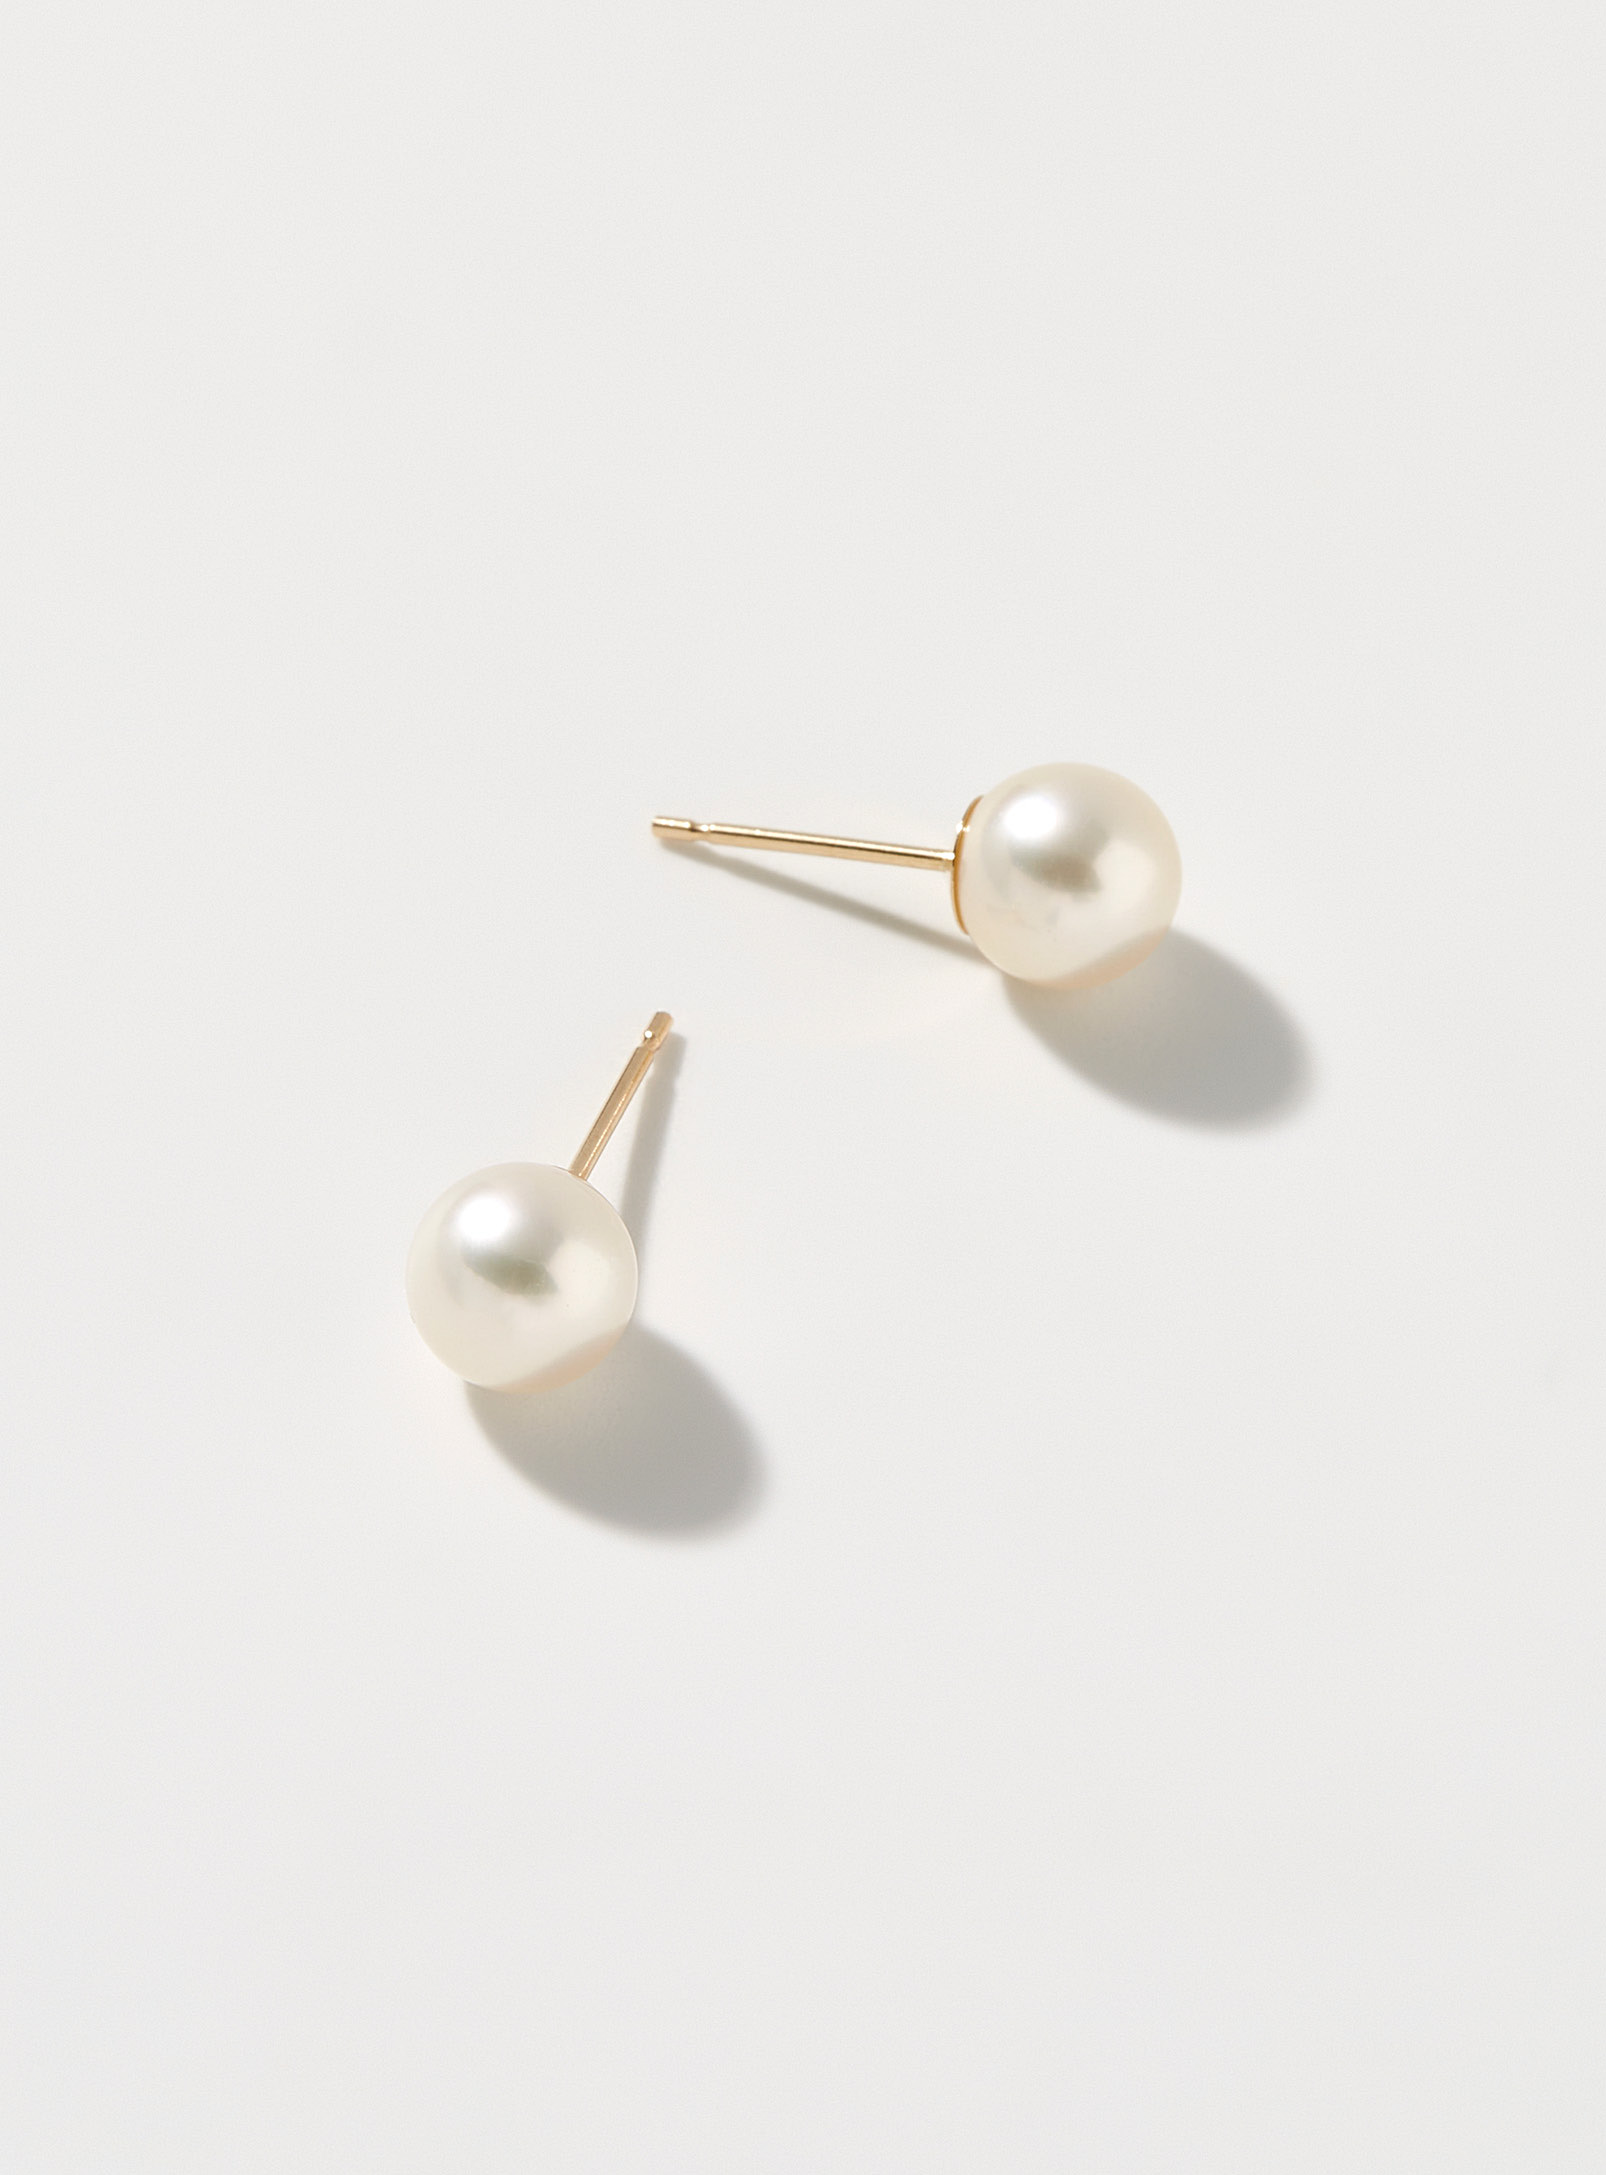 Poppy Finch - Women's Akoya pearl earrings